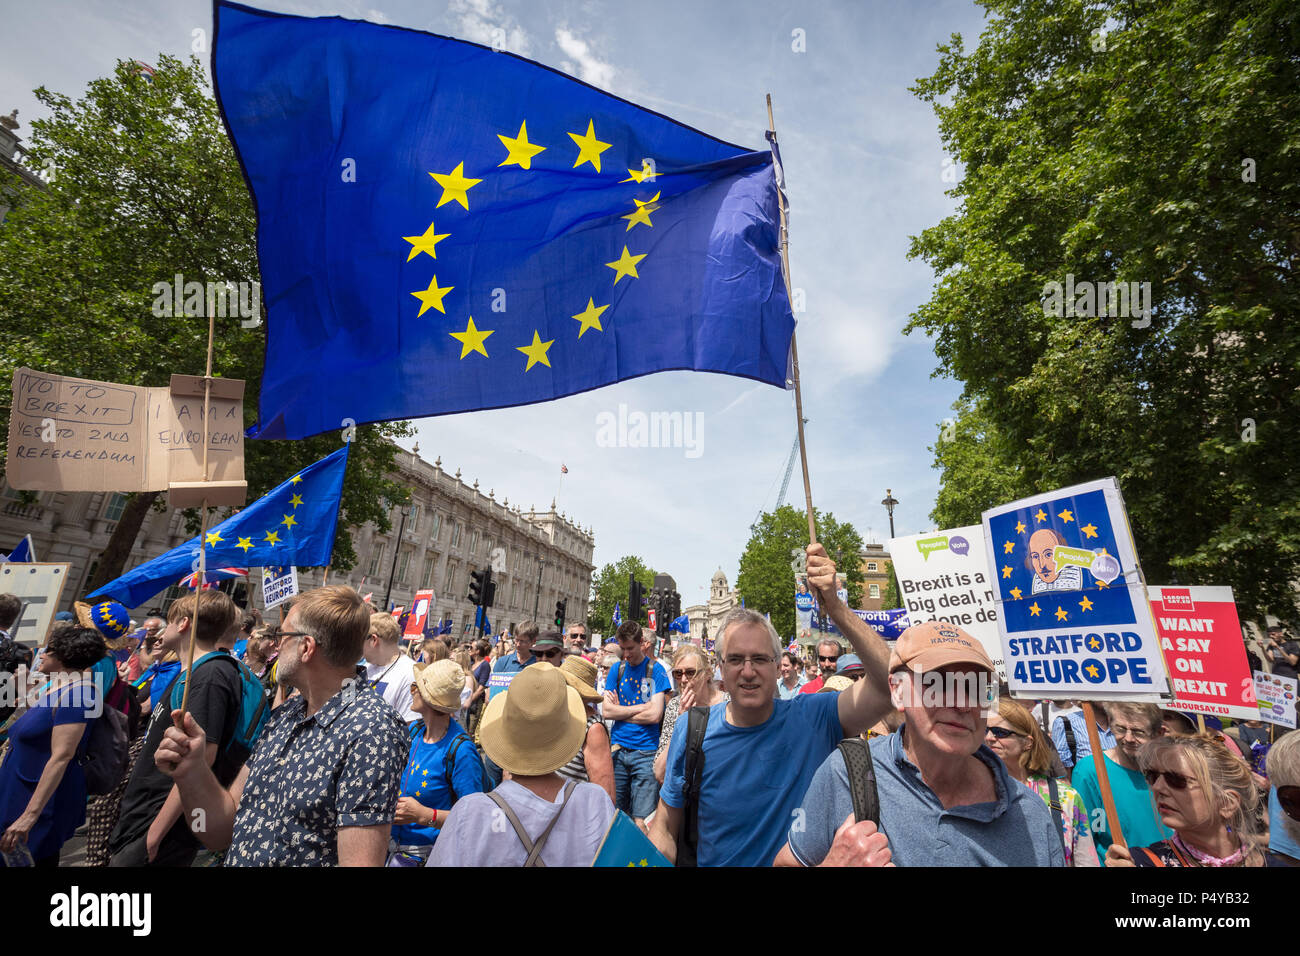 Londres, Reino Unido. 23 de junio de 2018. Anti-Brexit protesta: Más de 100.000 asistir a "Voto Popular" pro-UE de marzo para exigir un referéndum sobre los términos de Brexit dos años después de la votación. Crédito: Guy Corbishley/Alamy Live News Foto de stock